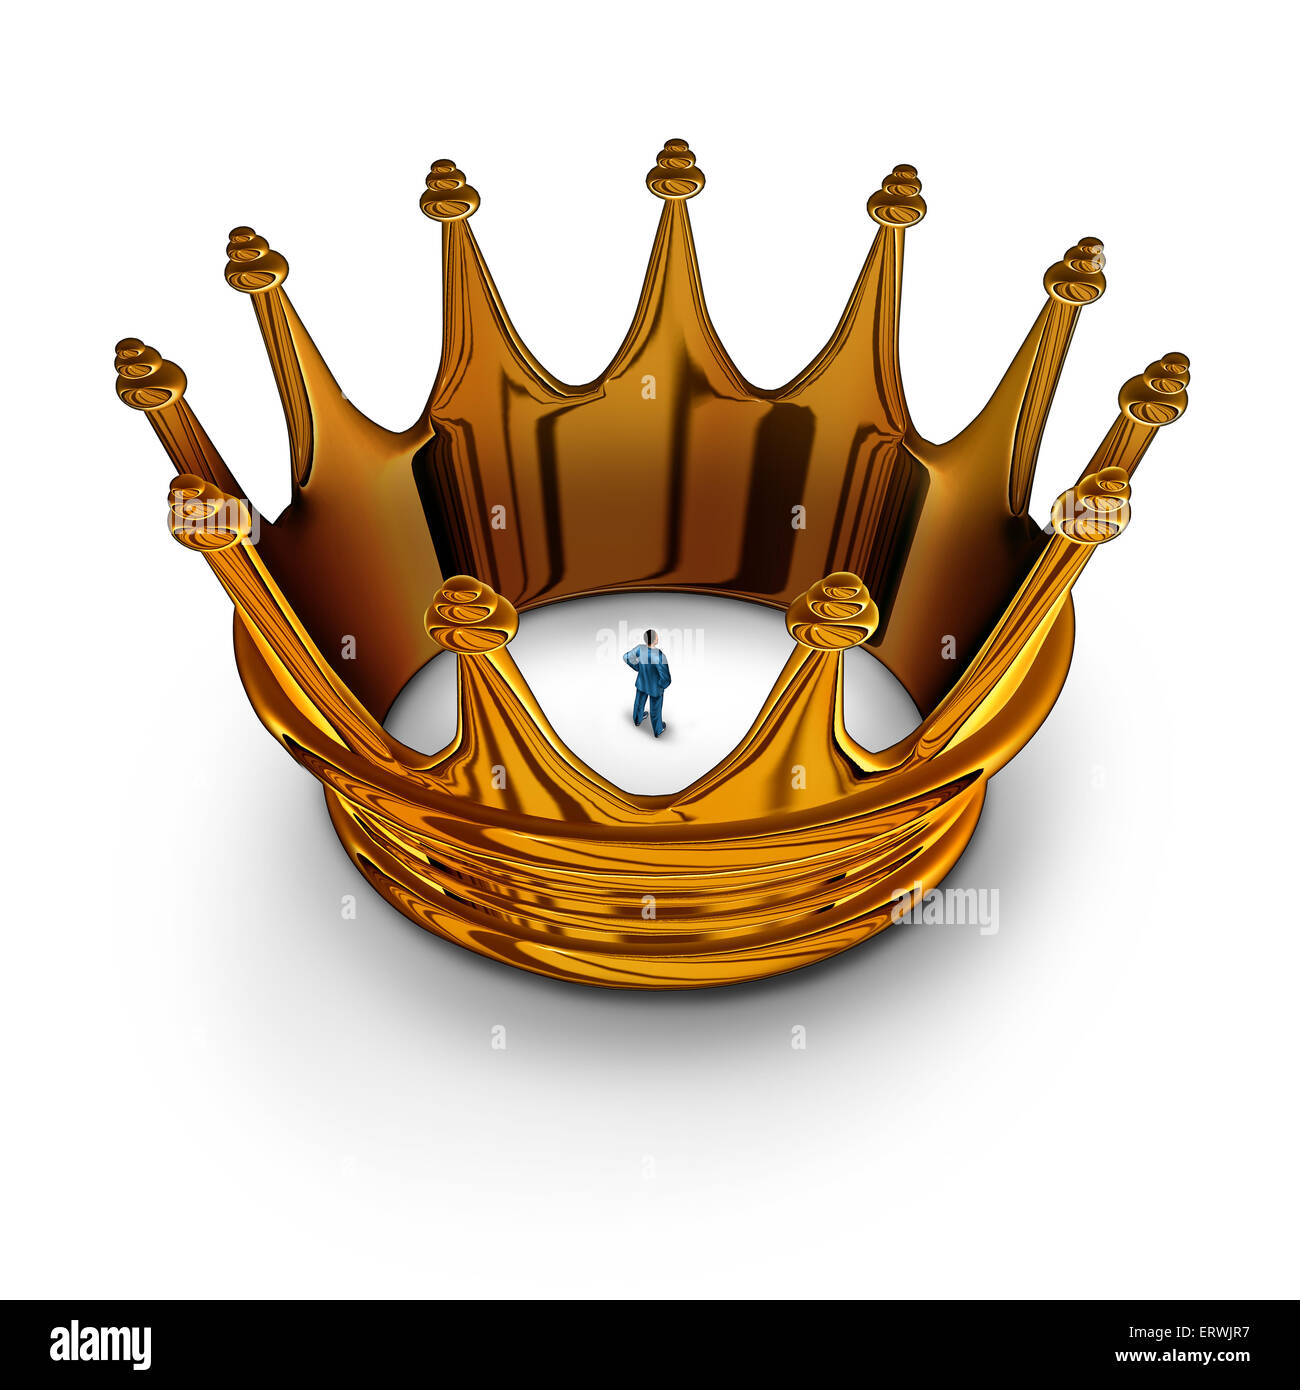 Concepto de negocio prisionero de liderazgo como empresario atrapado y restringido dentro de un rey gold crown como una metáfora para tener restricciones de gestión en los poderes limitados y mucho que hacer. Foto de stock